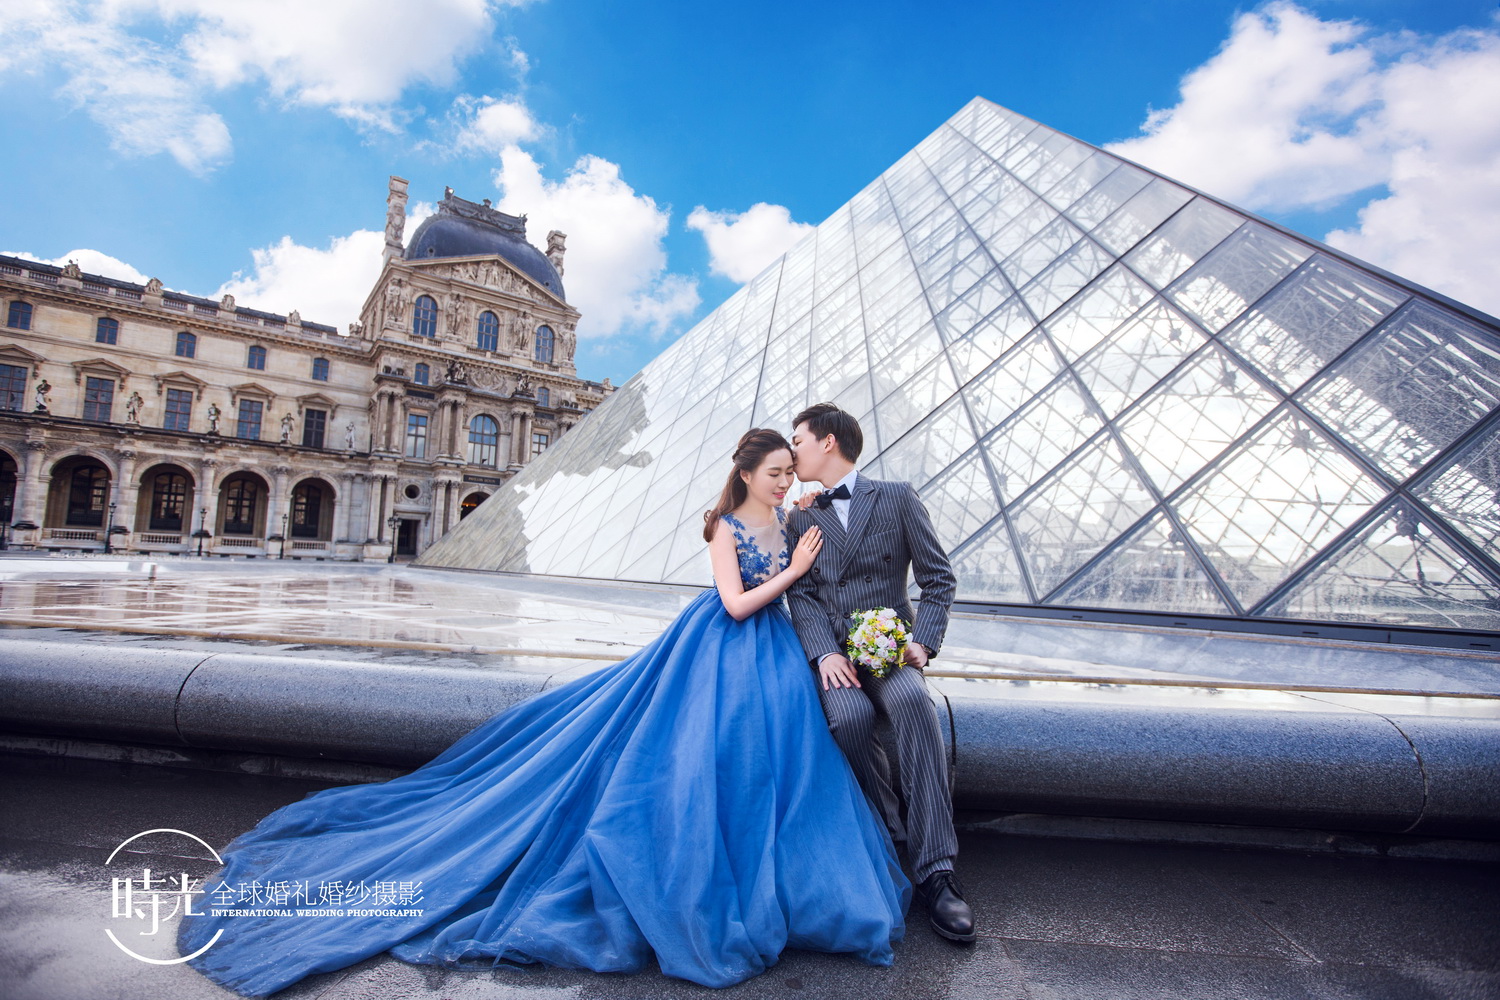 时光海外摄影—巴黎婚纱照 爱是未知的遇见,爱是一见钟情;当我遇的沣